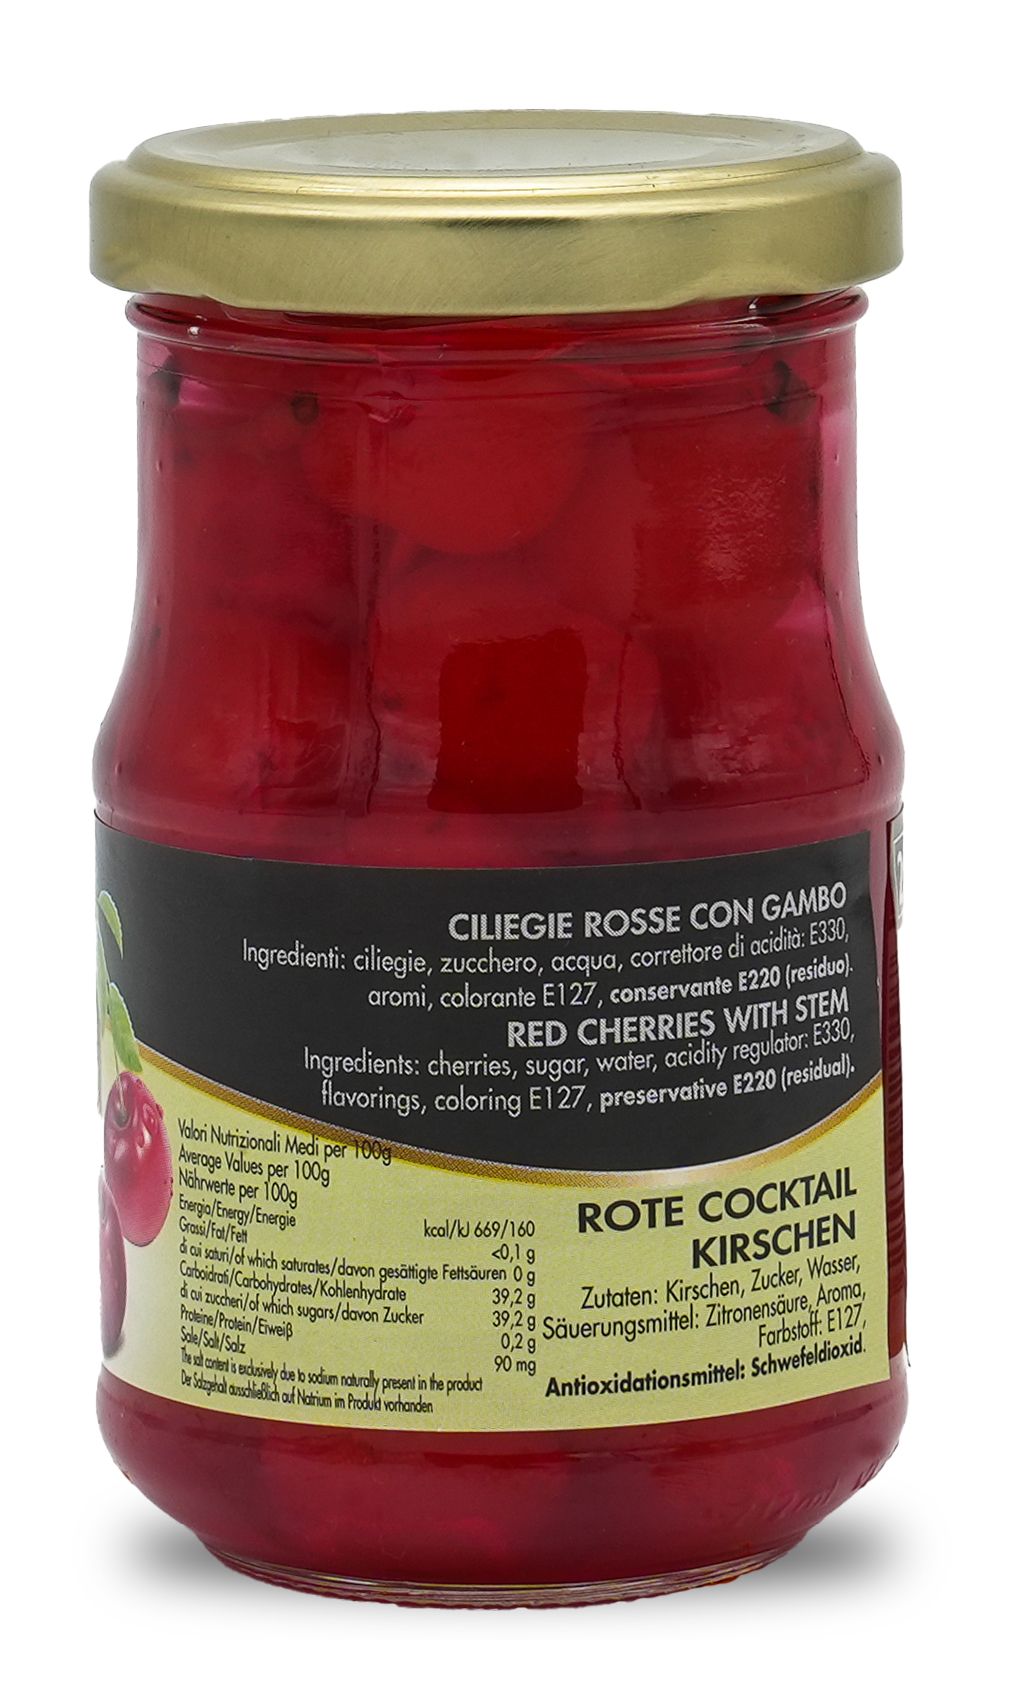 CILIEGIE ROSSE | Rote Cocktail Kirschen entsteint und mit Stiel | LUCIANO | 212ml | aus Italien | Früchte